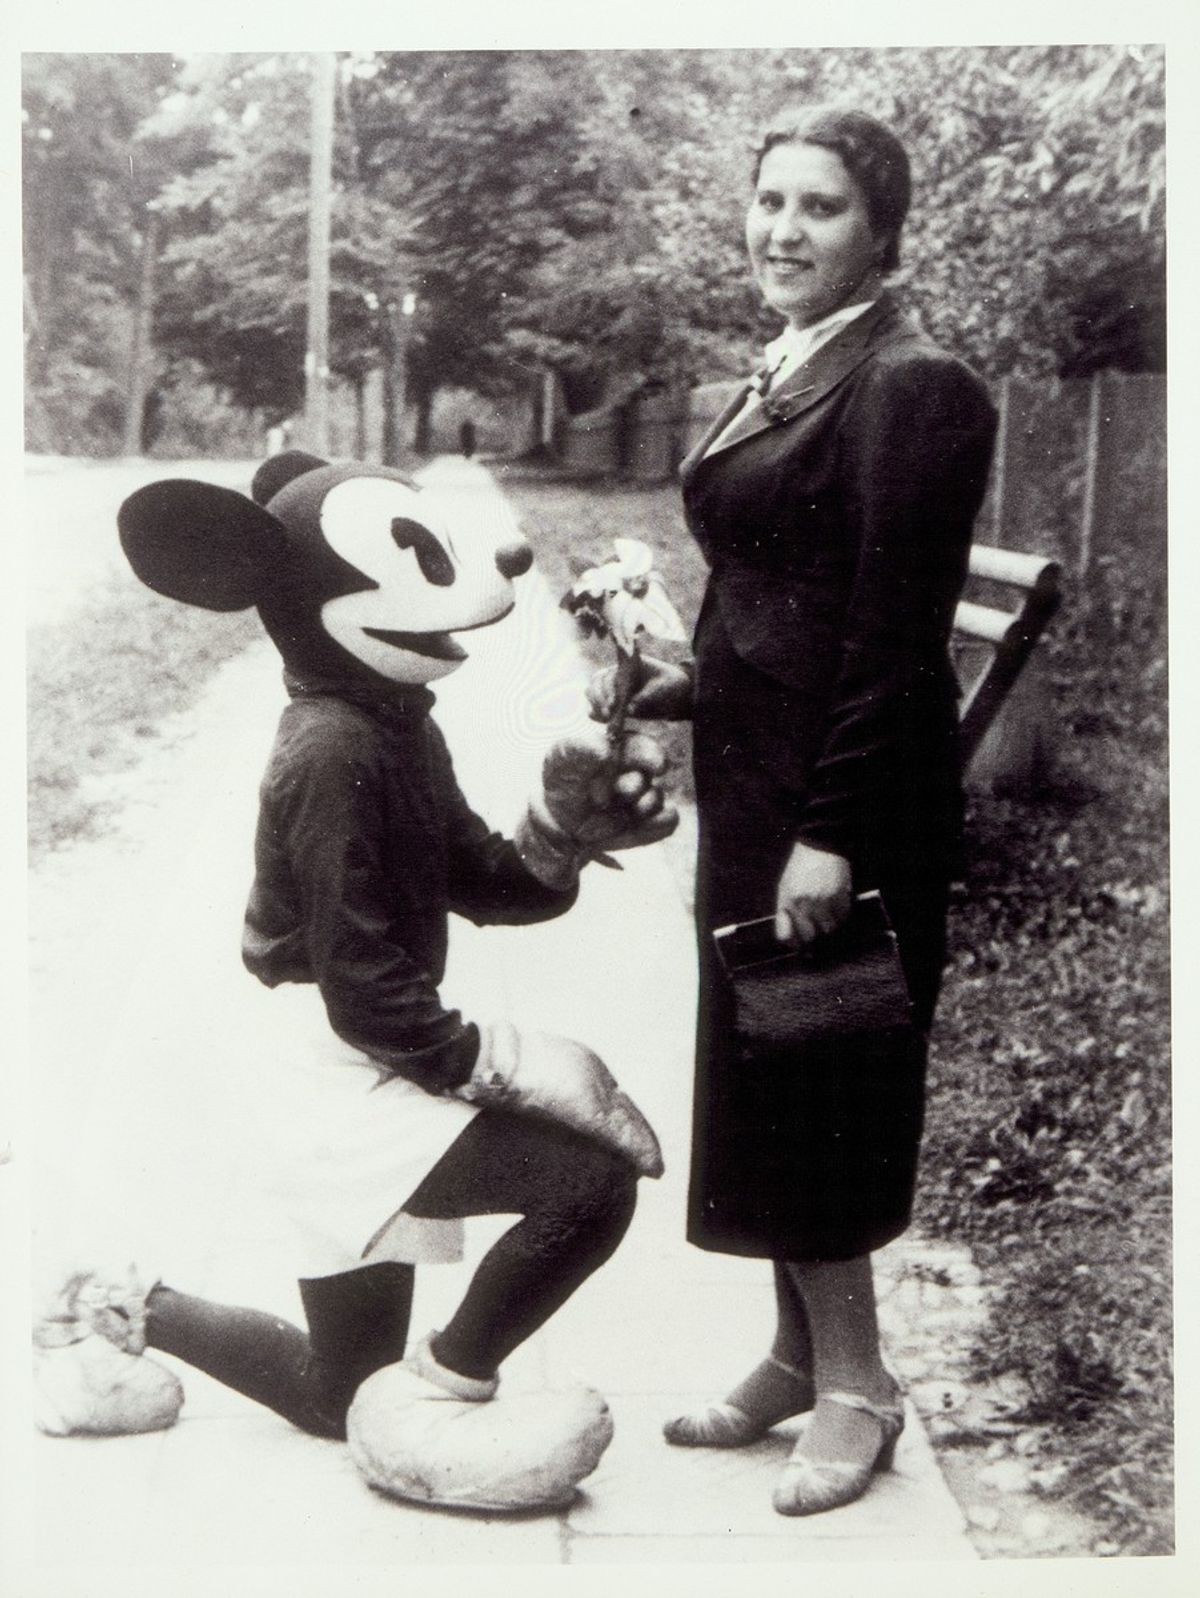 Žydė Estera Lapp linksmai pozuoja su Peliuko Mikio kostiumą vilkinčiu žmogumi, Eišiškės. United States Holocaust Memorial Museum.